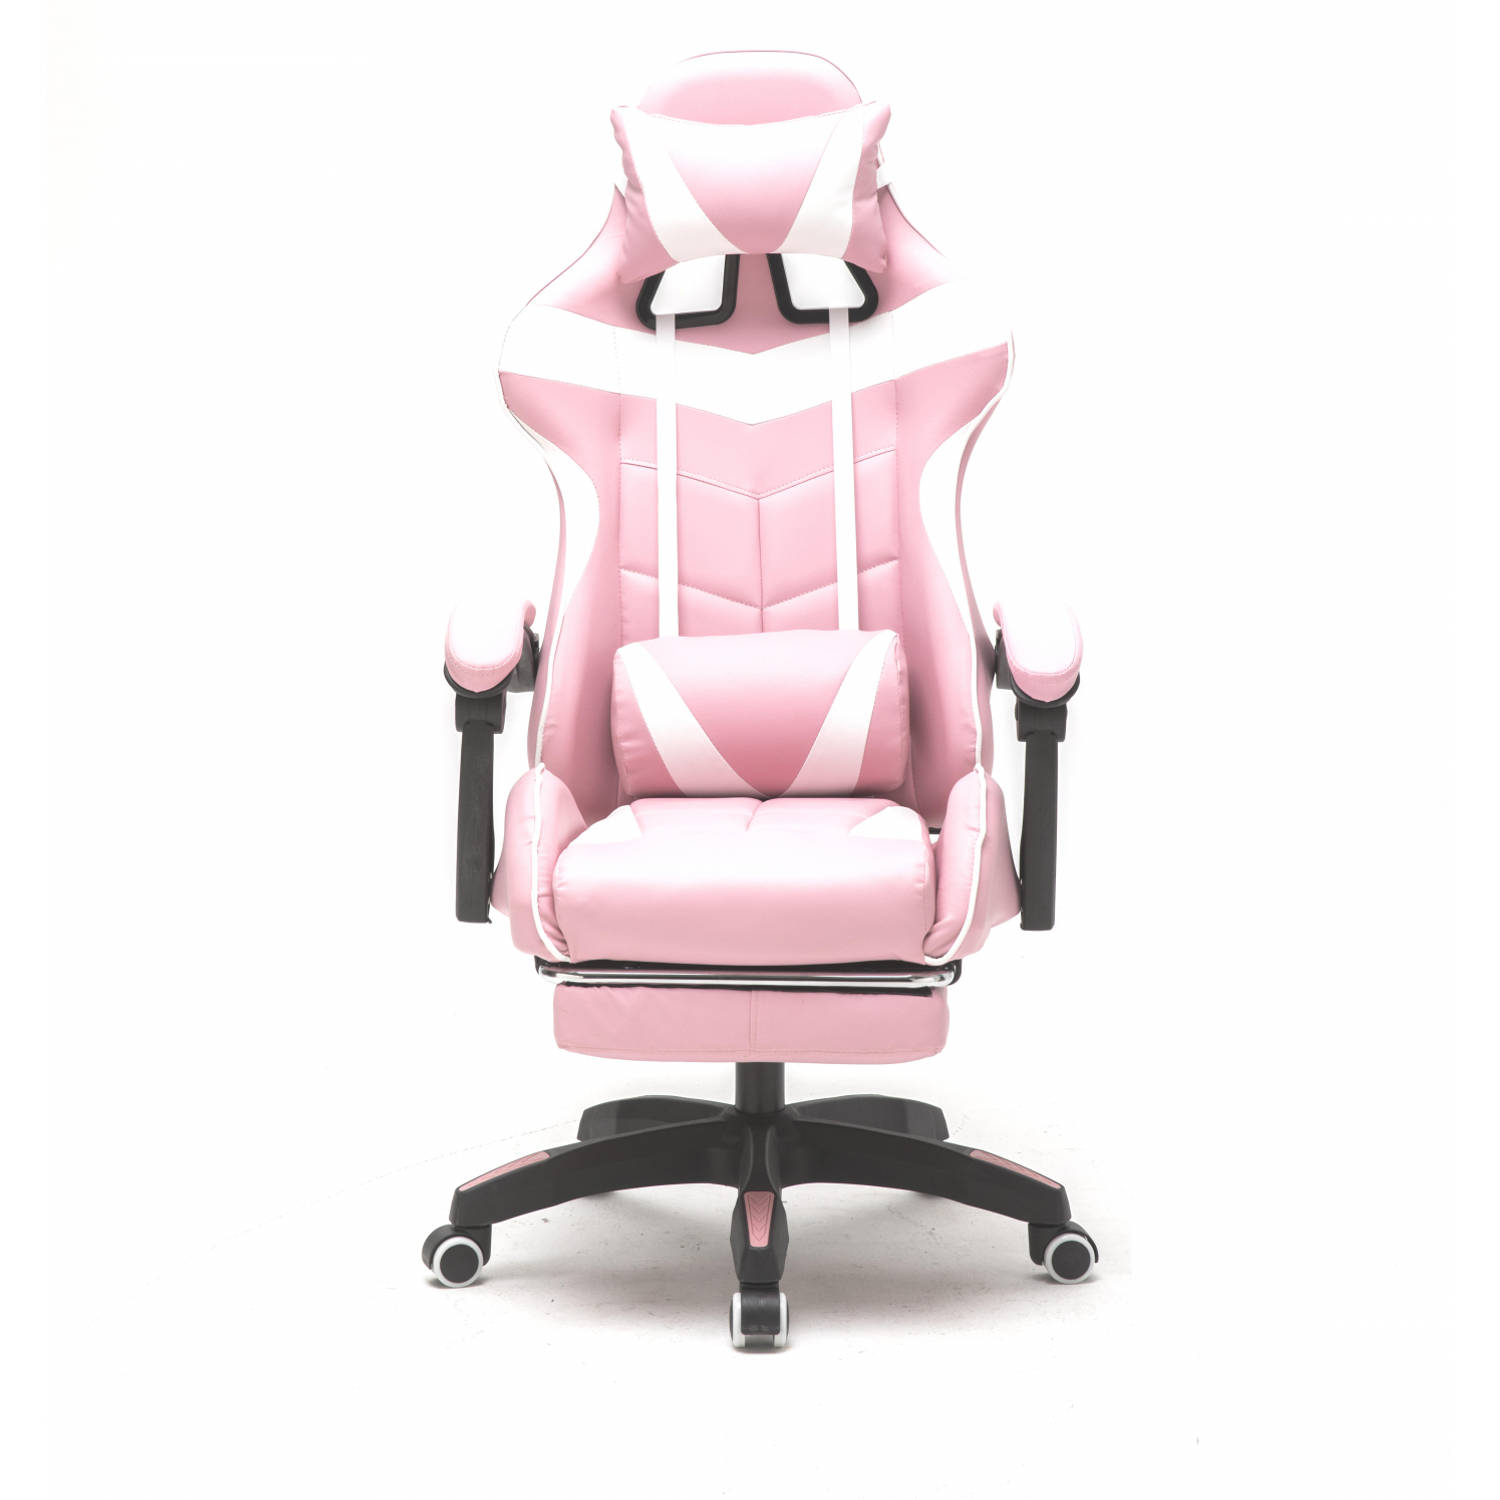 door elkaar haspelen De neiging hebben Bloemlezing Gamestoel met voetsteun Cyclone tieners - bureaustoel - racing gaming stoel  - roze wit | Blokker